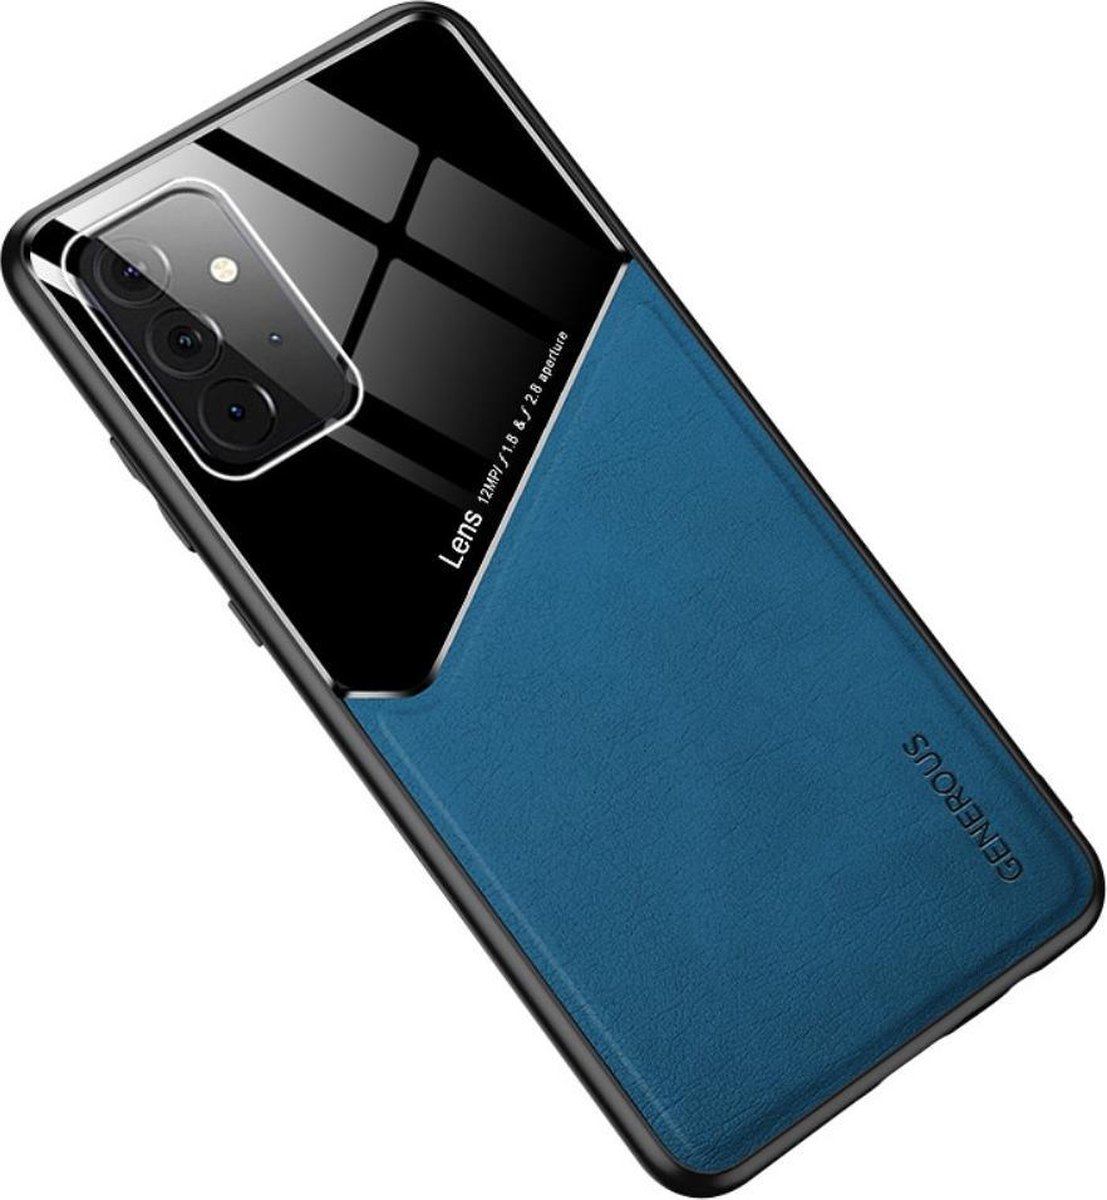 Blauwe hard cover Samsung Galaxy A72 geschikt voor magnetische autohouder